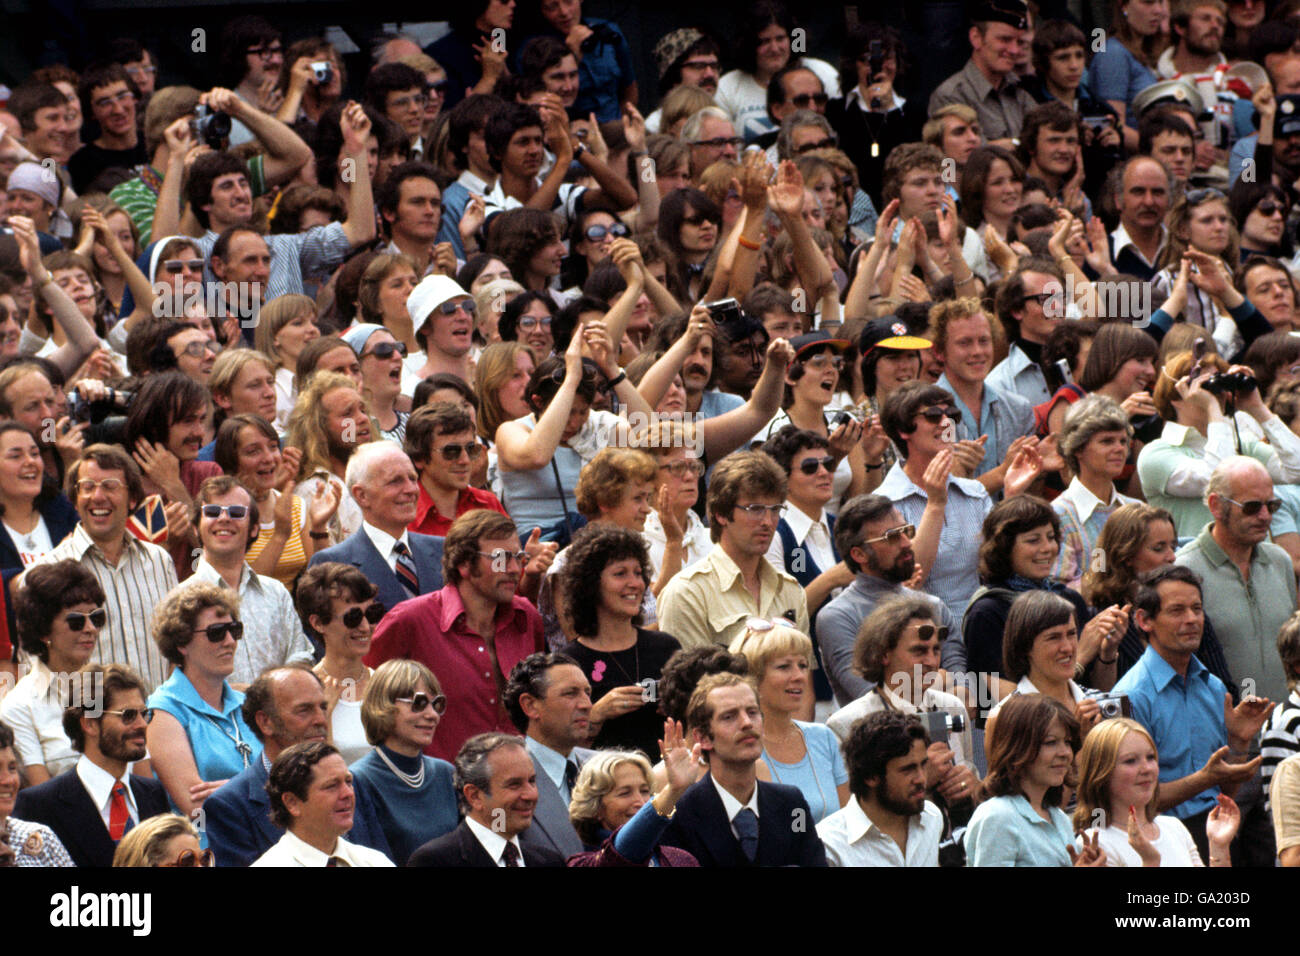 Tennis - Wimbledon - Virginia Wade / Betty Stove. Una sezione della folla entusiasta sul Centre Court mentre la Virginia Wade britannica ha vinto il campionato femminile di Wimbledon. Foto Stock